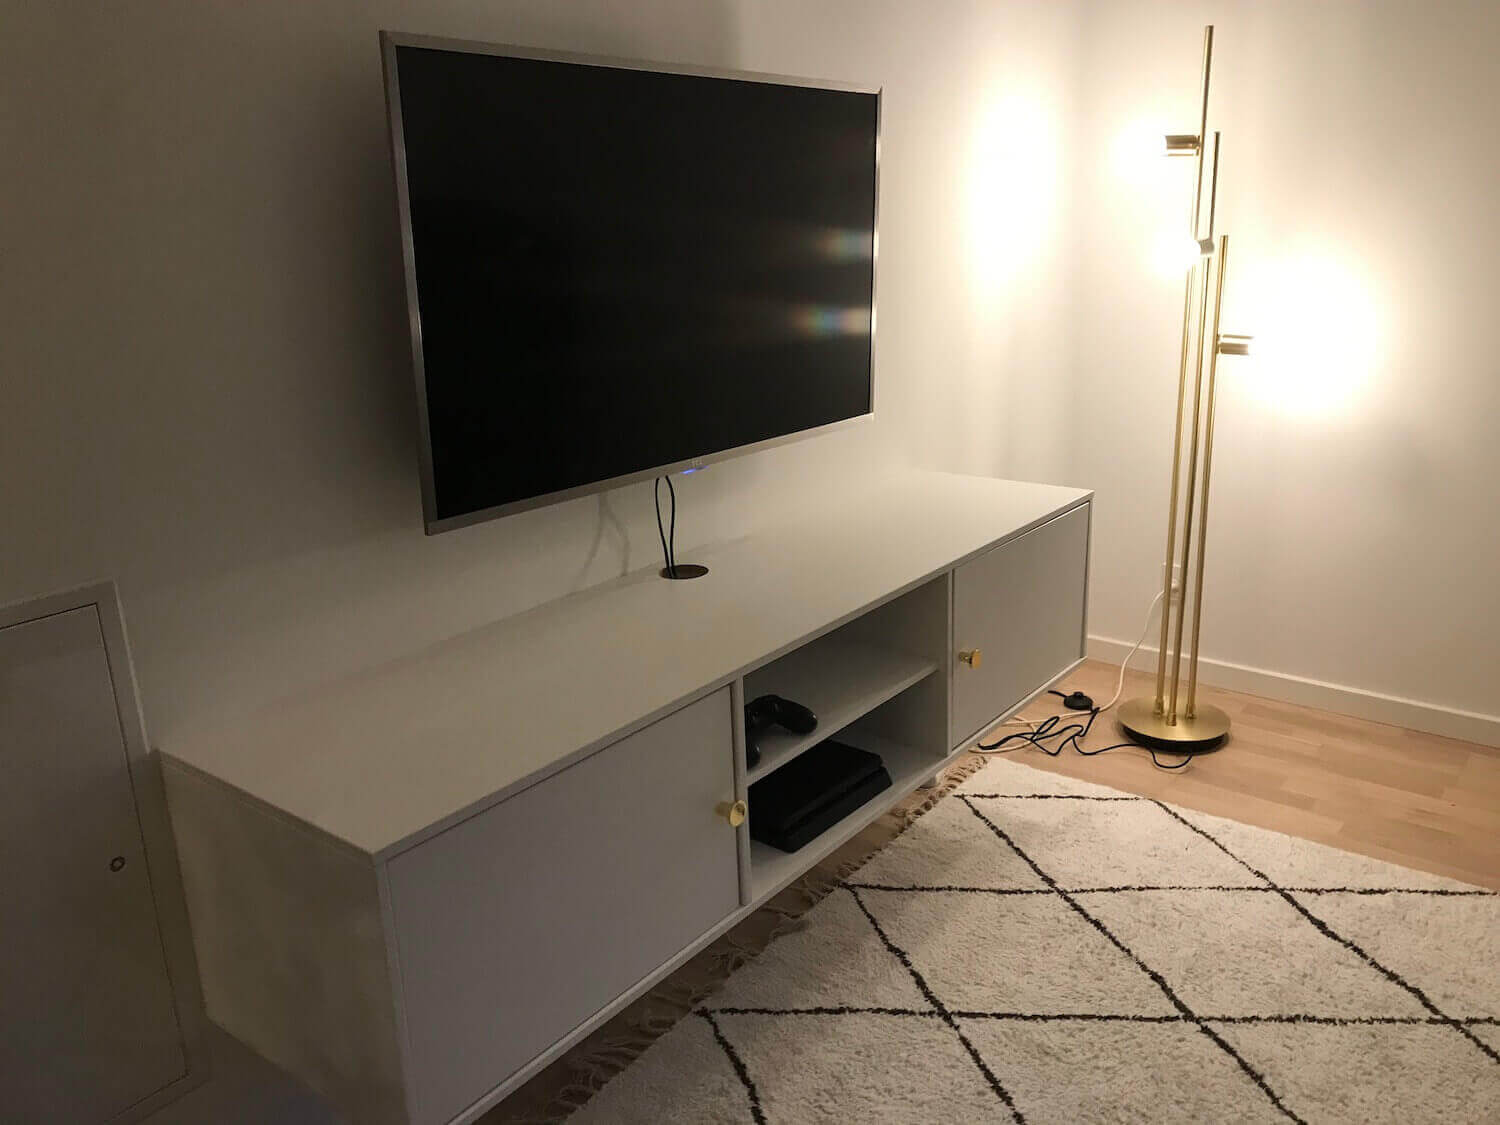 Væg-montering af TCL TV og TV møbel